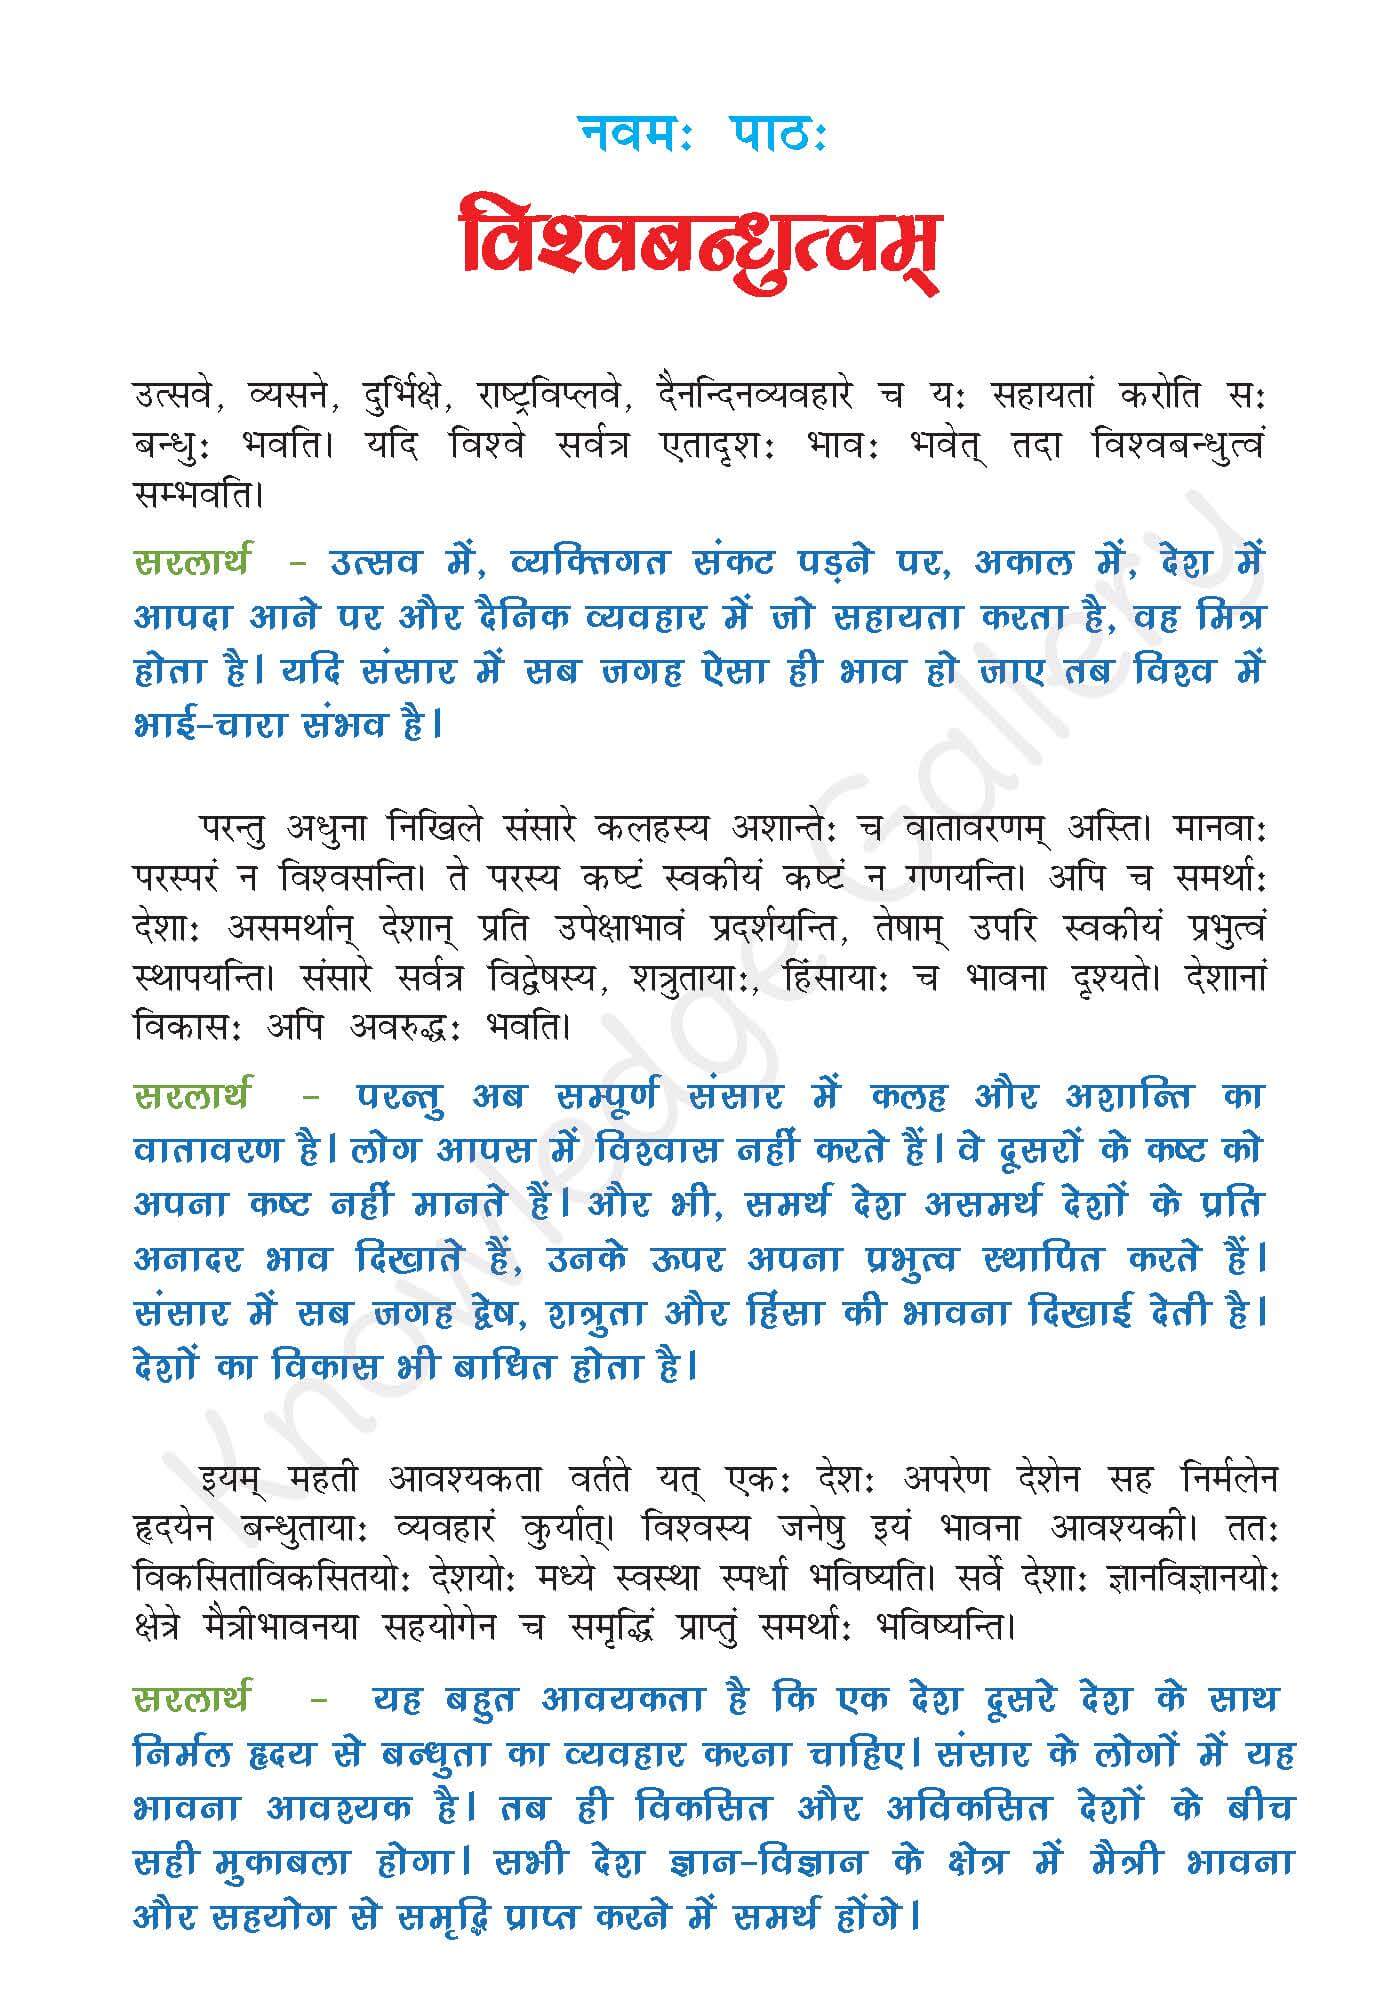 NCERT Solution For Class 7 Sanskrit Chapter 9 part 1